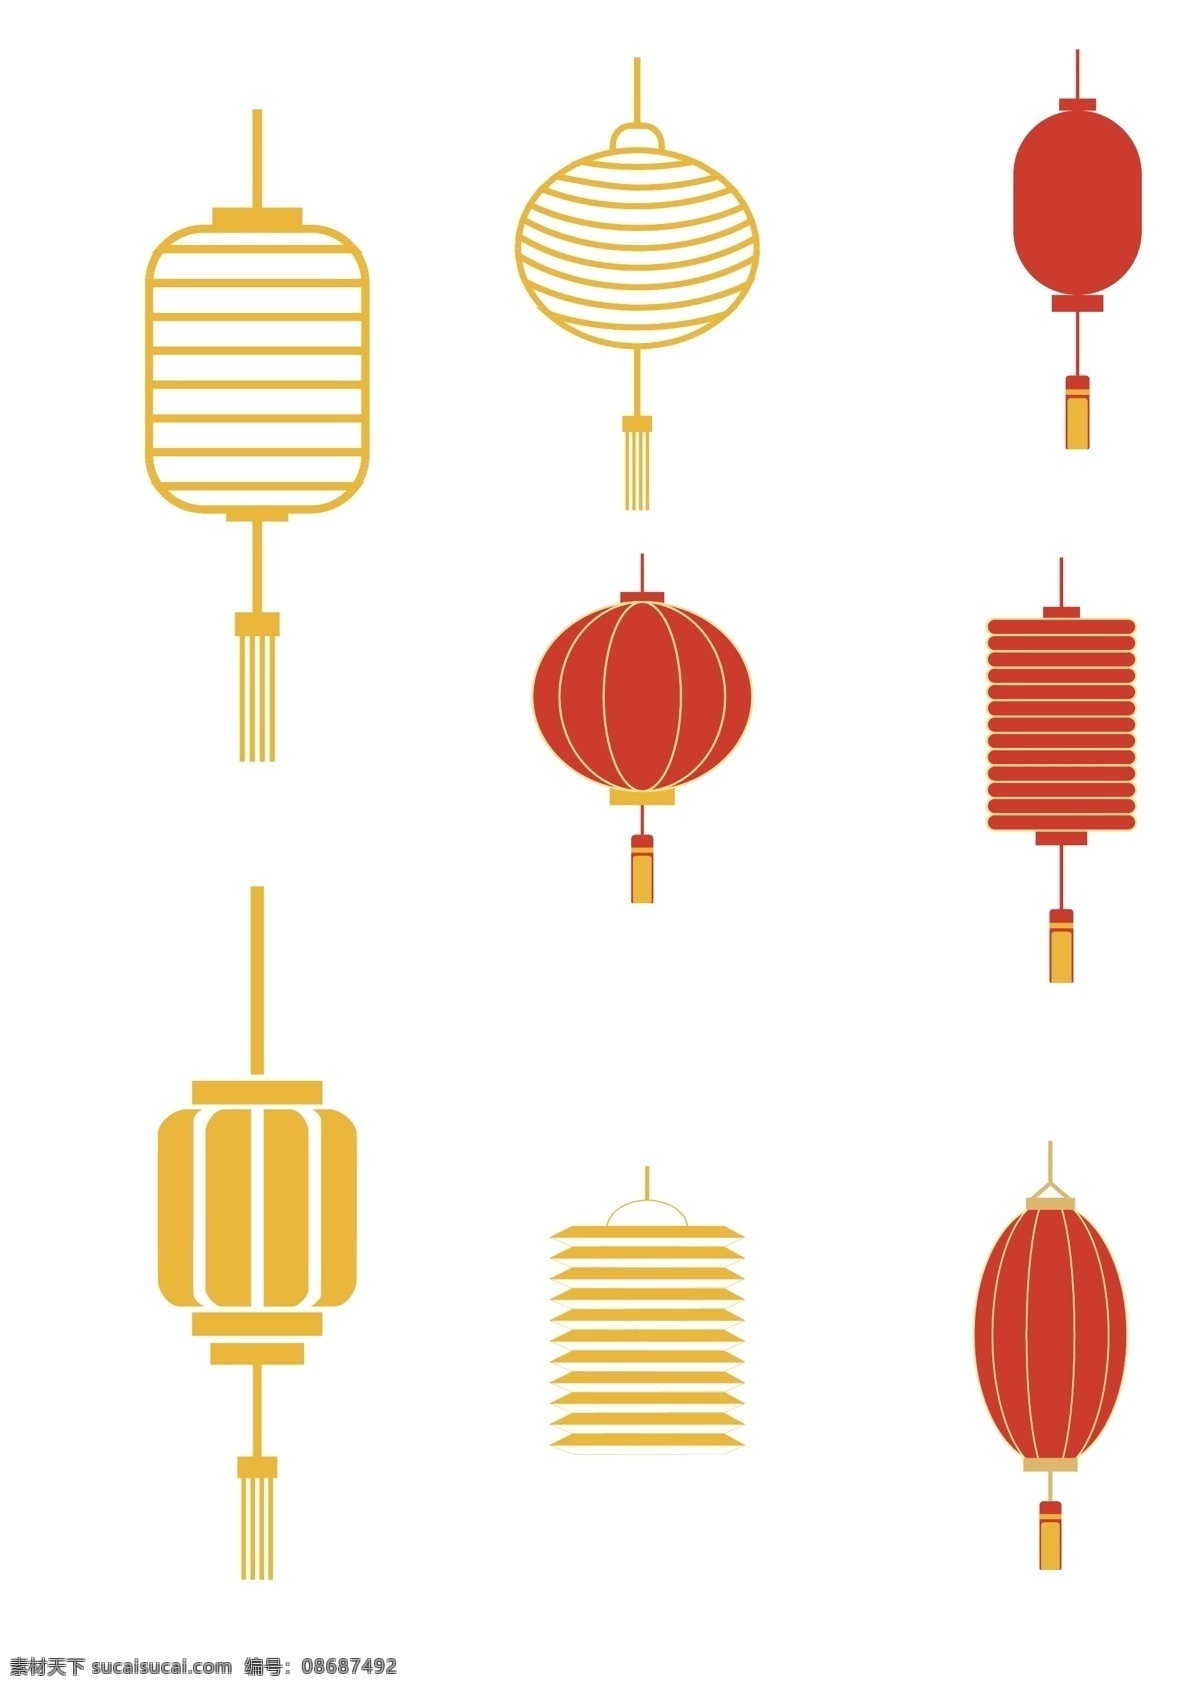 中国 传统 灯笼 矢量 矢量灯笼 中国风 传统风 红灯笼 简版灯笼 元素素材 文化艺术 节日庆祝